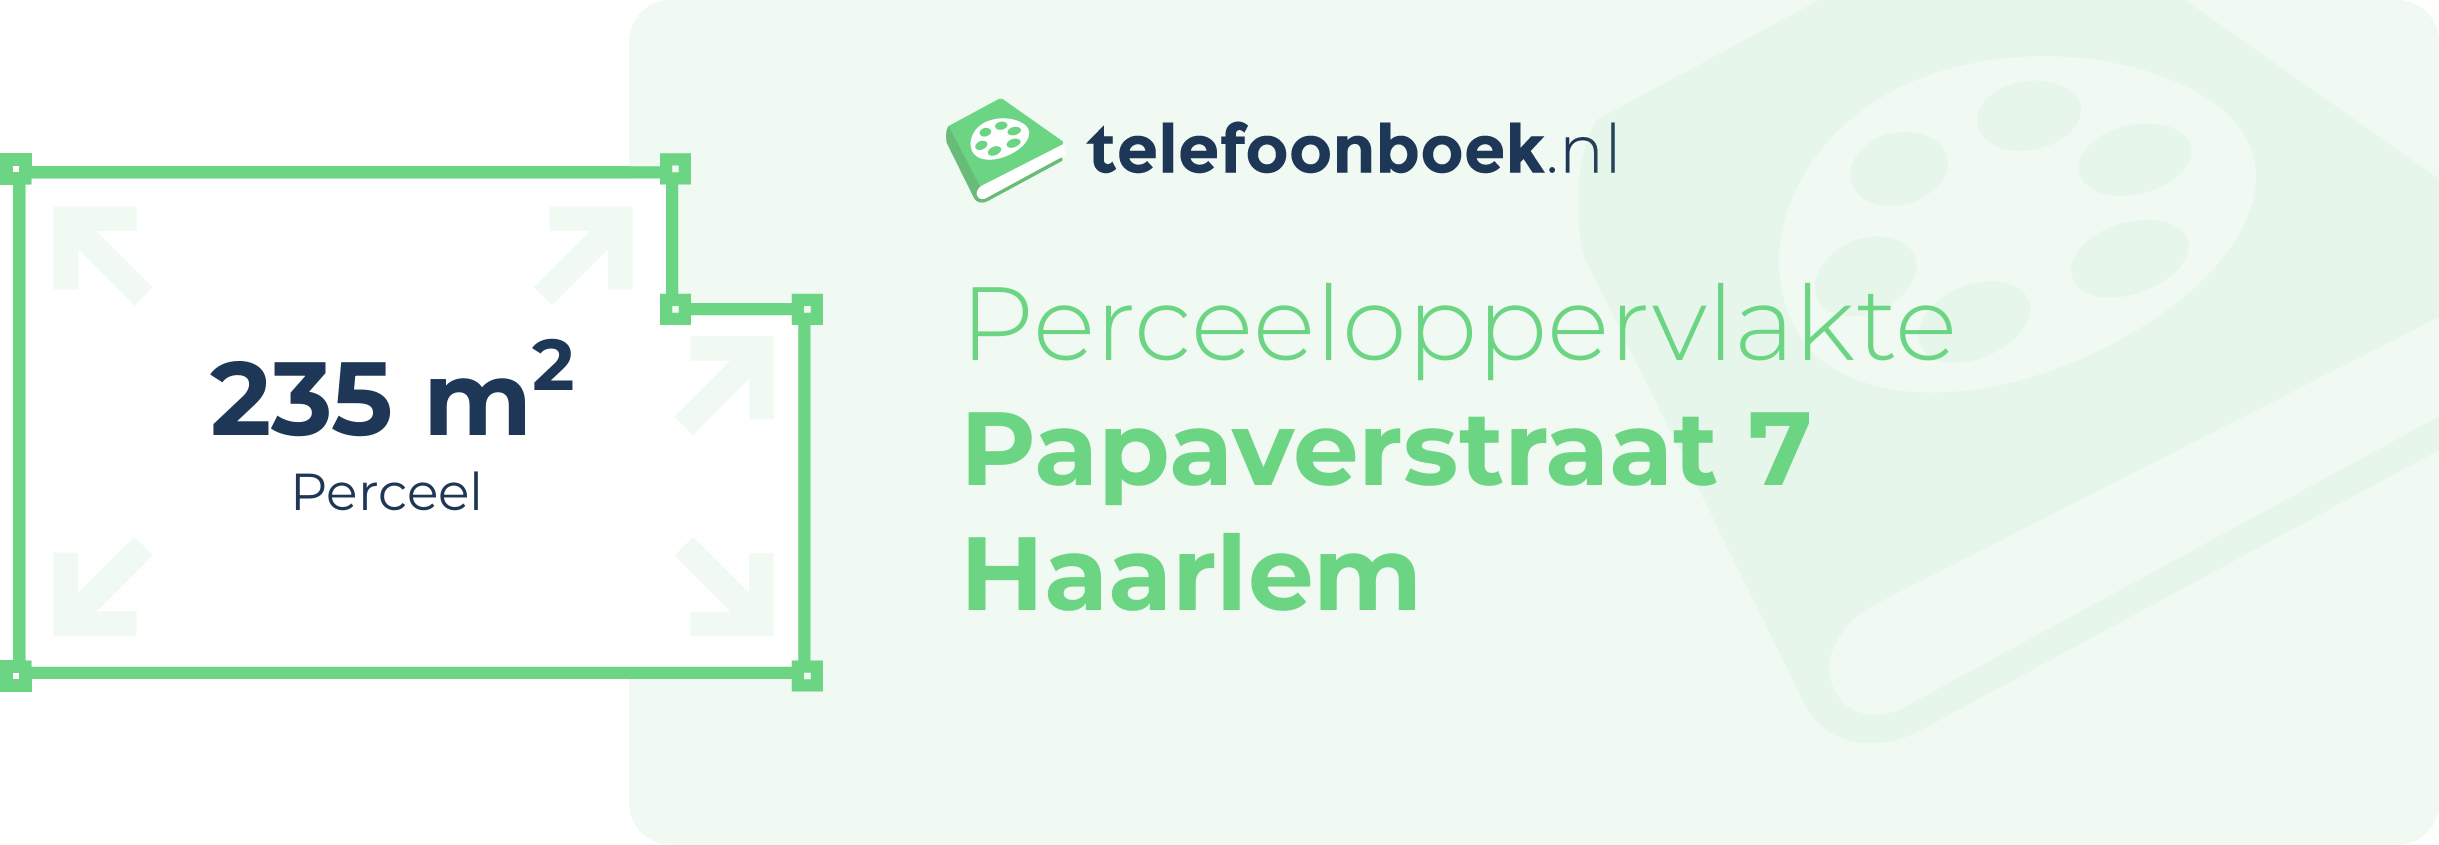 Perceeloppervlakte Papaverstraat 7 Haarlem